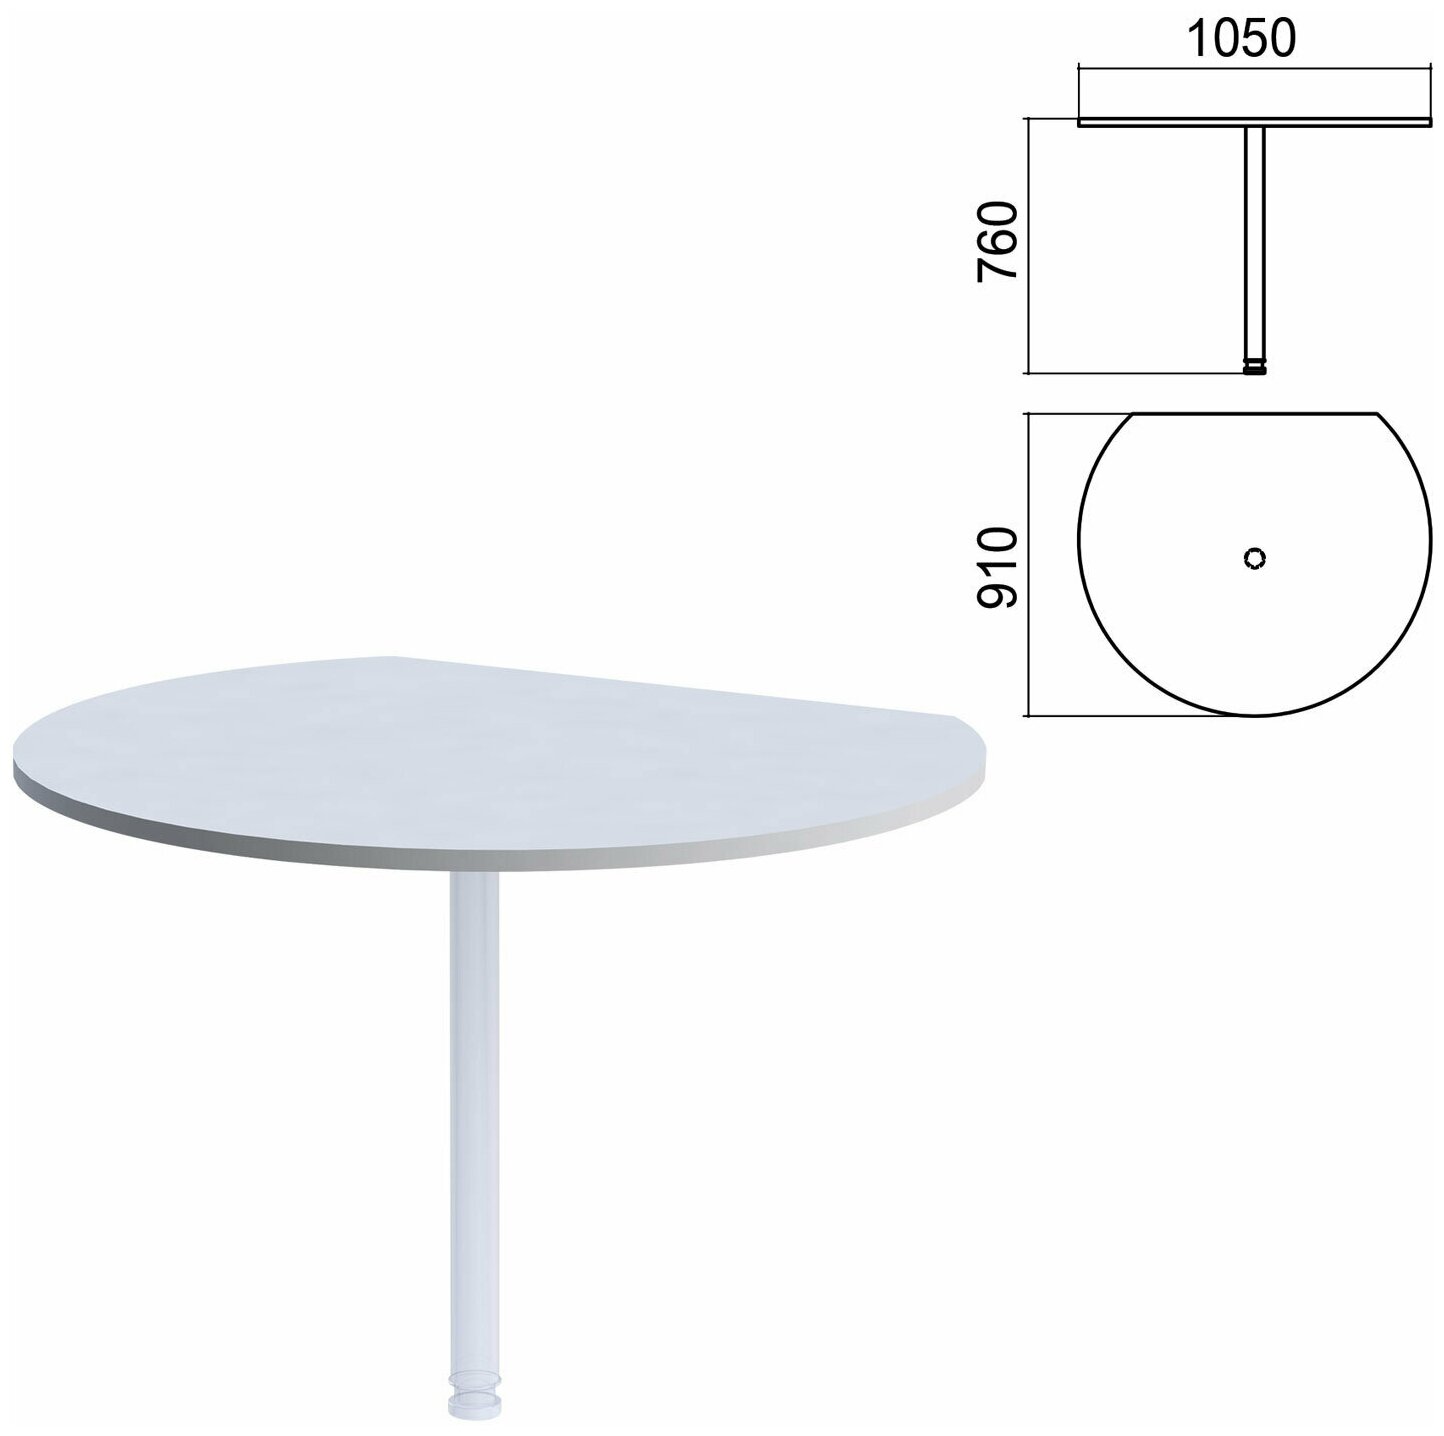 Стол приставной полукруг "Арго", 1050х910 мм, без опоры, серый - 1 шт.